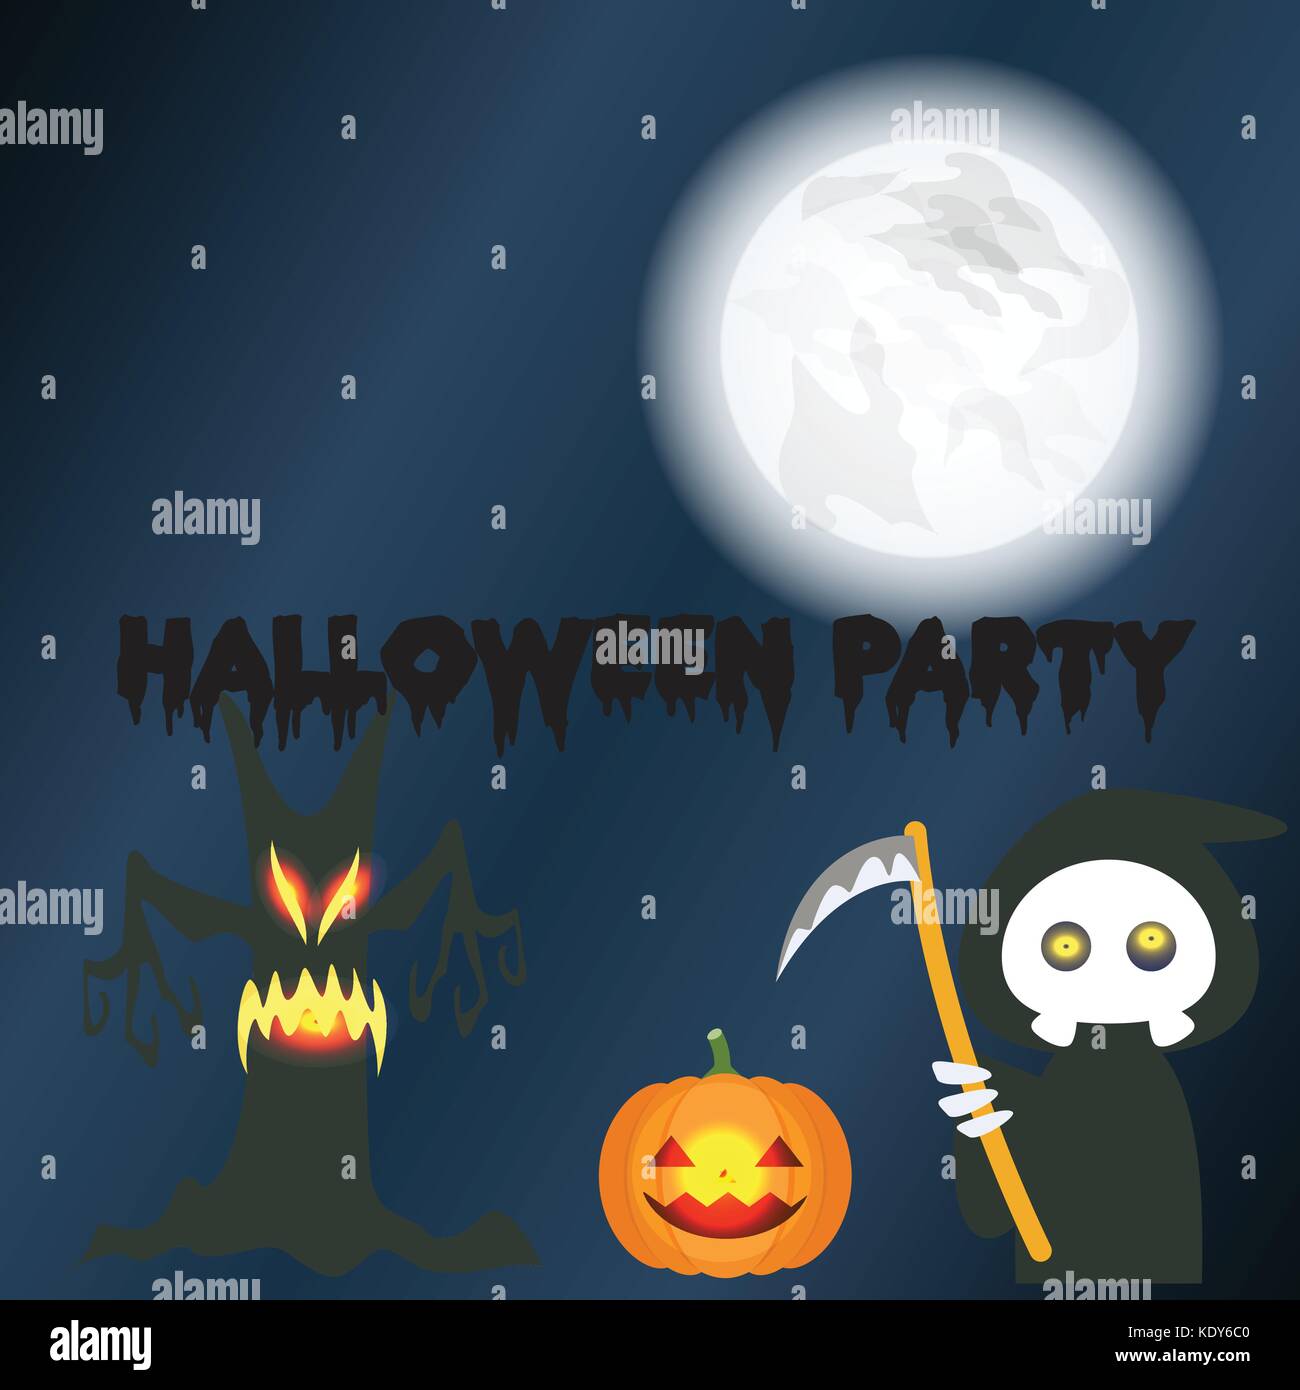 Artiste : dulyapon somsri : halloween night party fête fond toile de fond d'écran vector illustration Carte postale Carte. Elle peut être appliquée à tout. Illustration de Vecteur